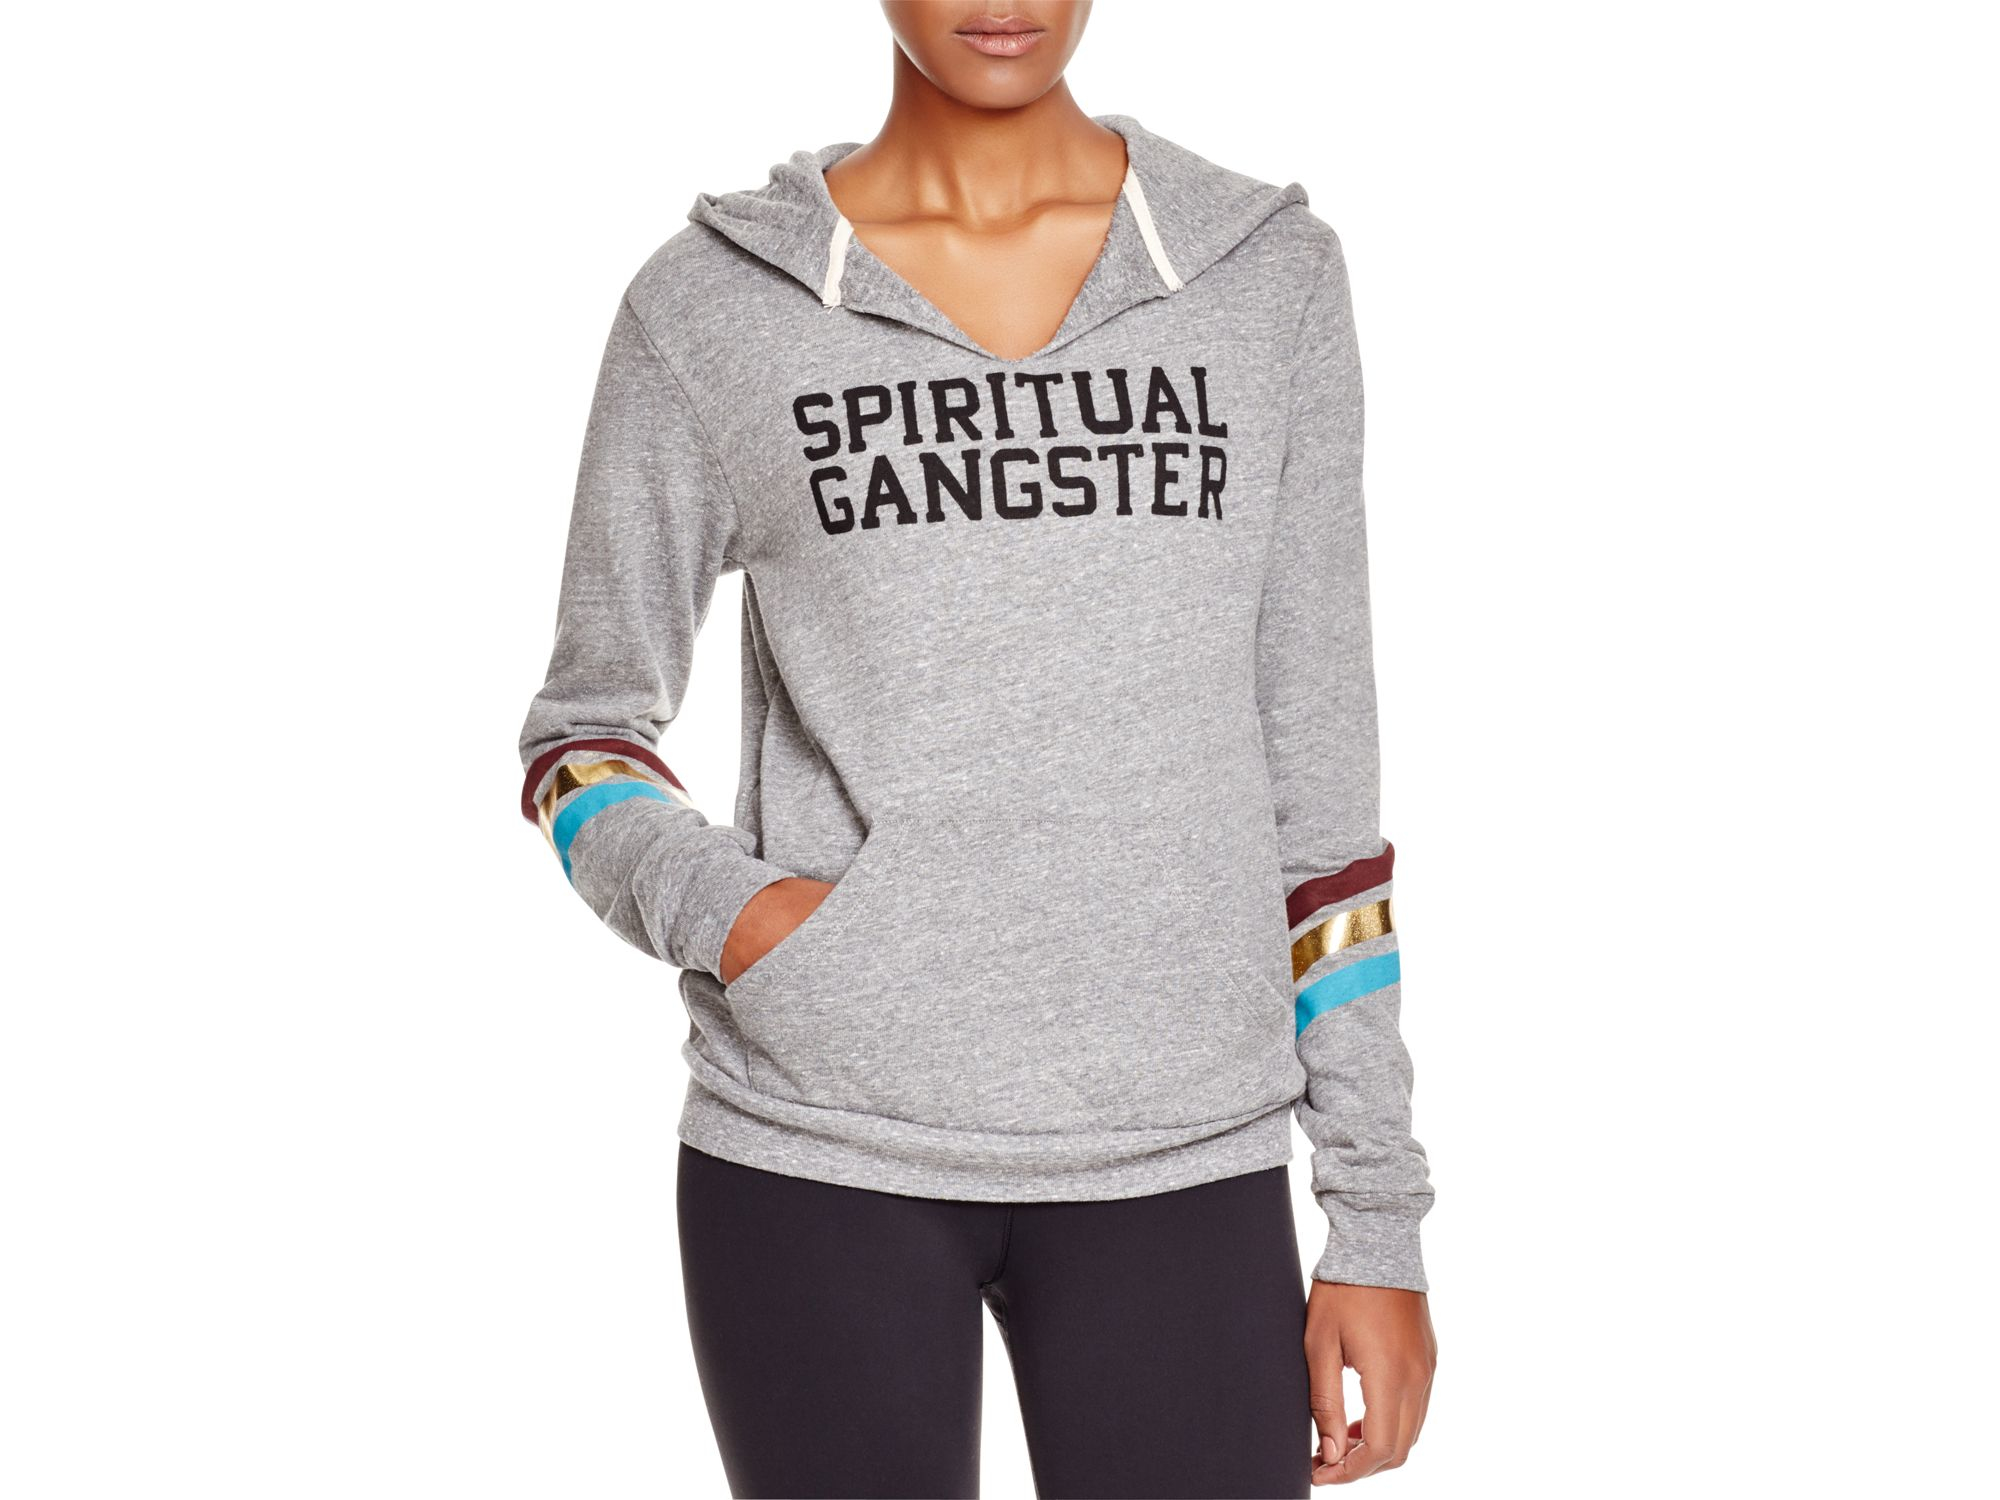 Lyst - Spiritual gangster Grateful Printed Hooded Sweatshirt in Gray